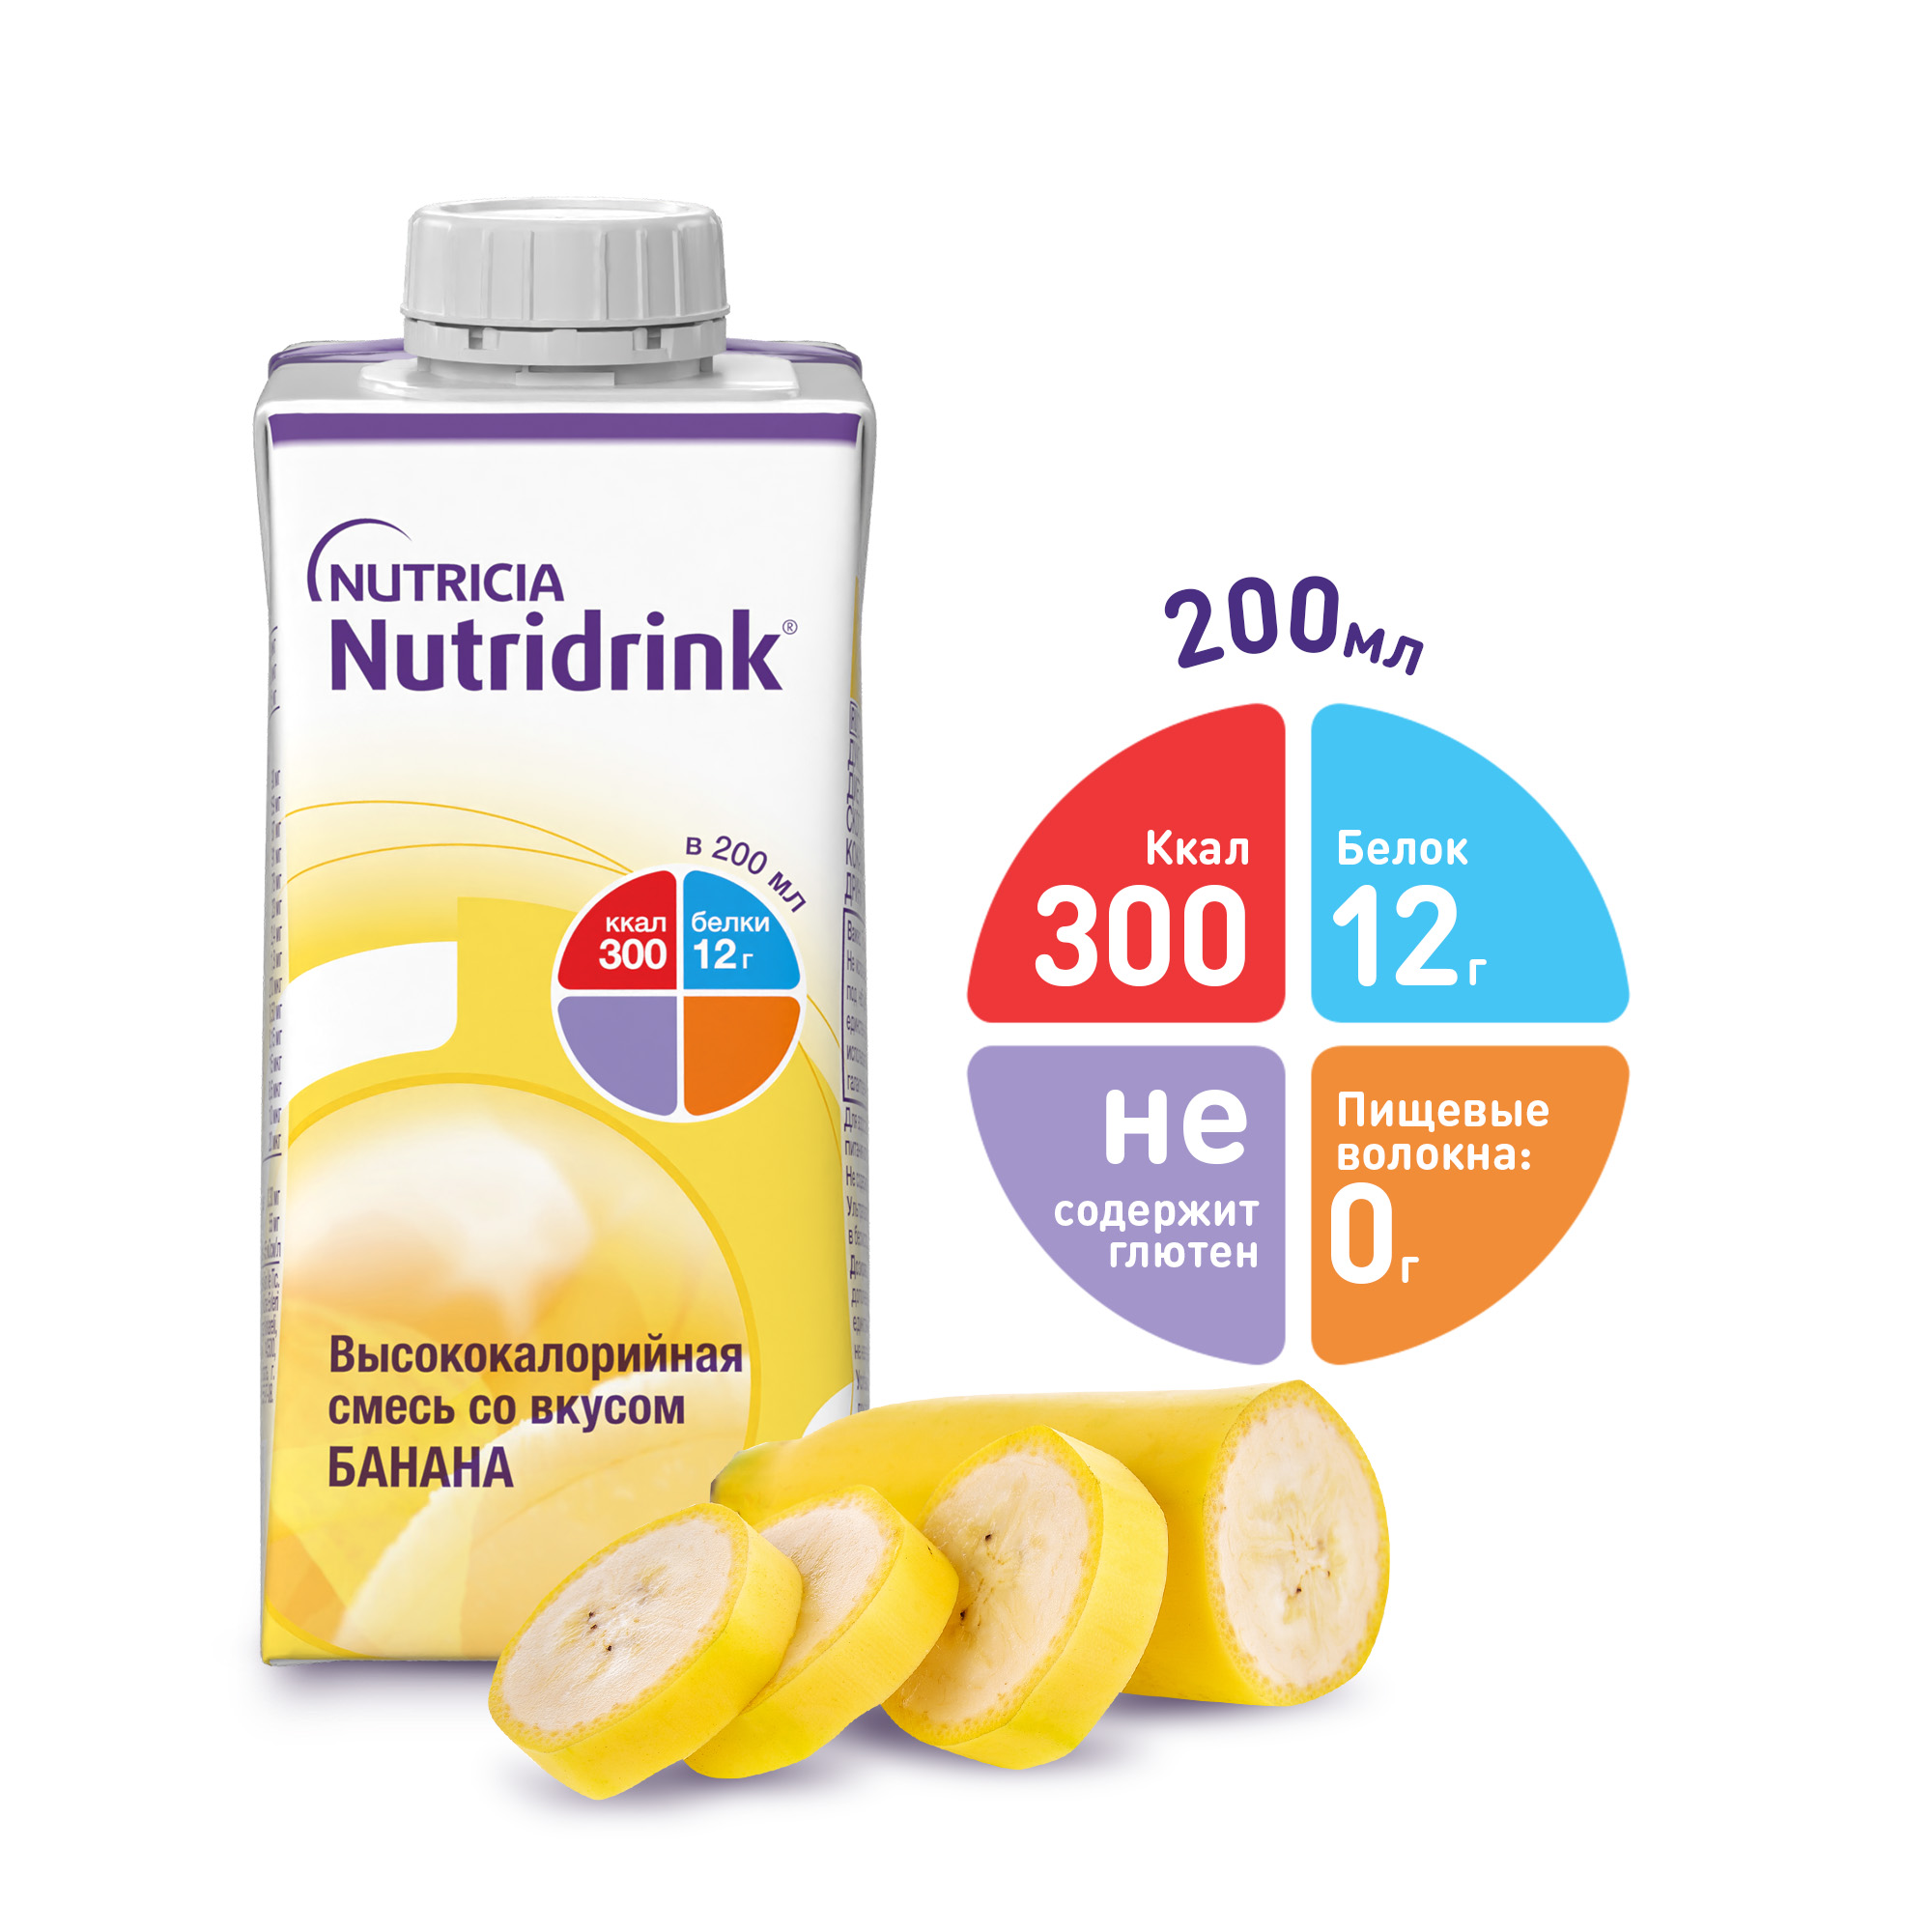 Нутридринк смесь банан 200мл смесь жидкая высококалорийная банан nutridrink нутридринк 200мл